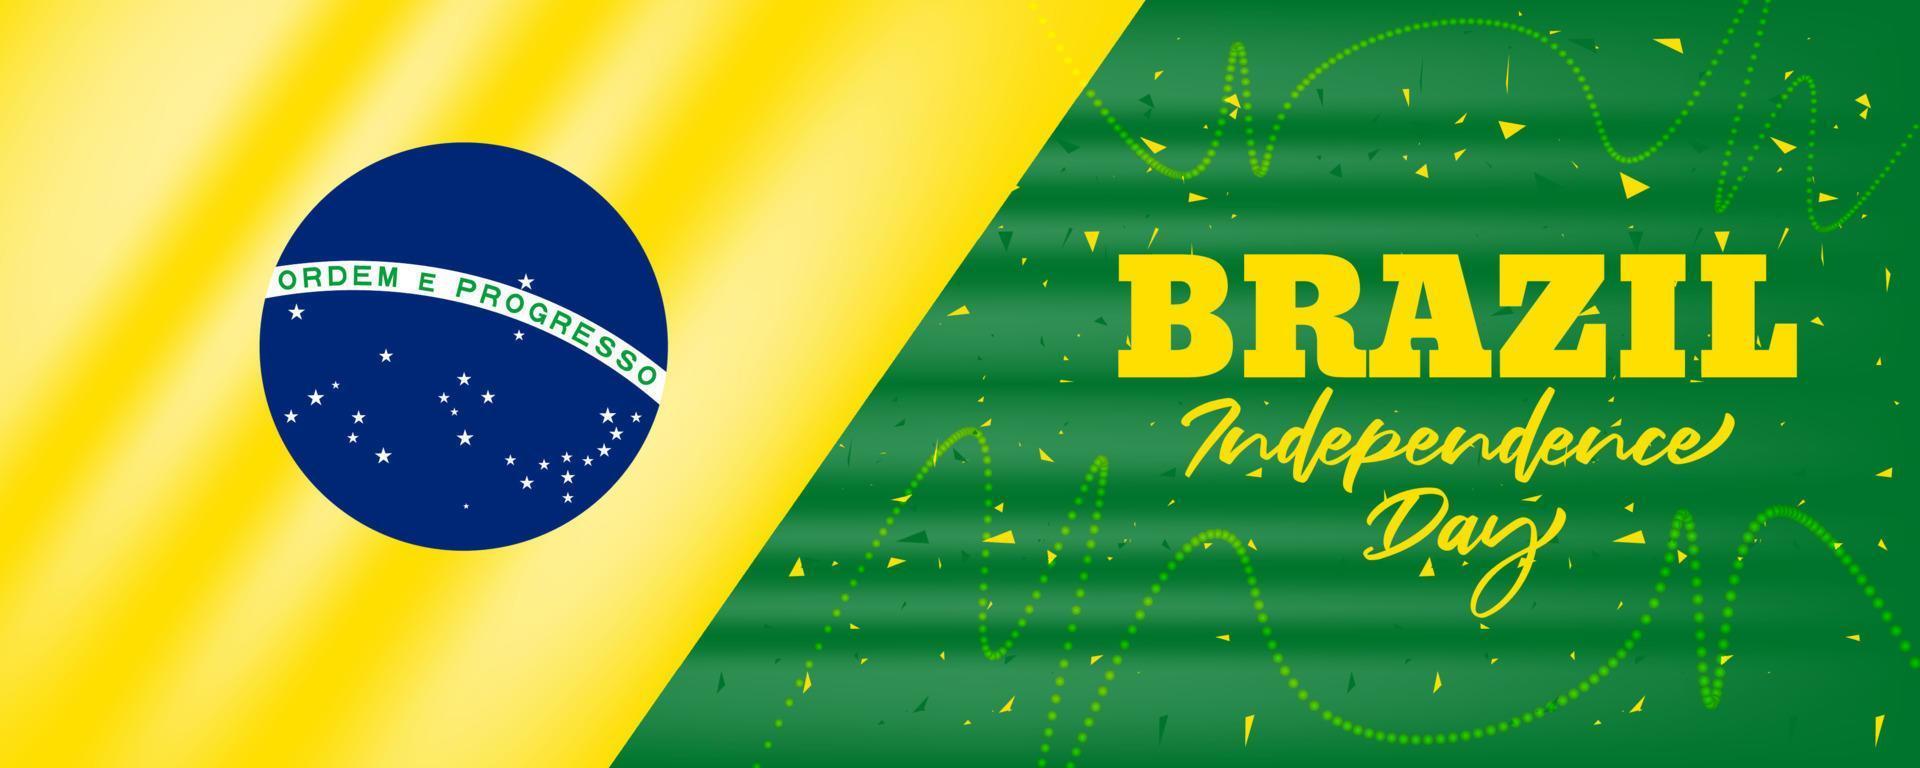 hintergrund des brasilien-unabhängigkeitstages mit brasilien-flaggenschwenkender designillustration vektor